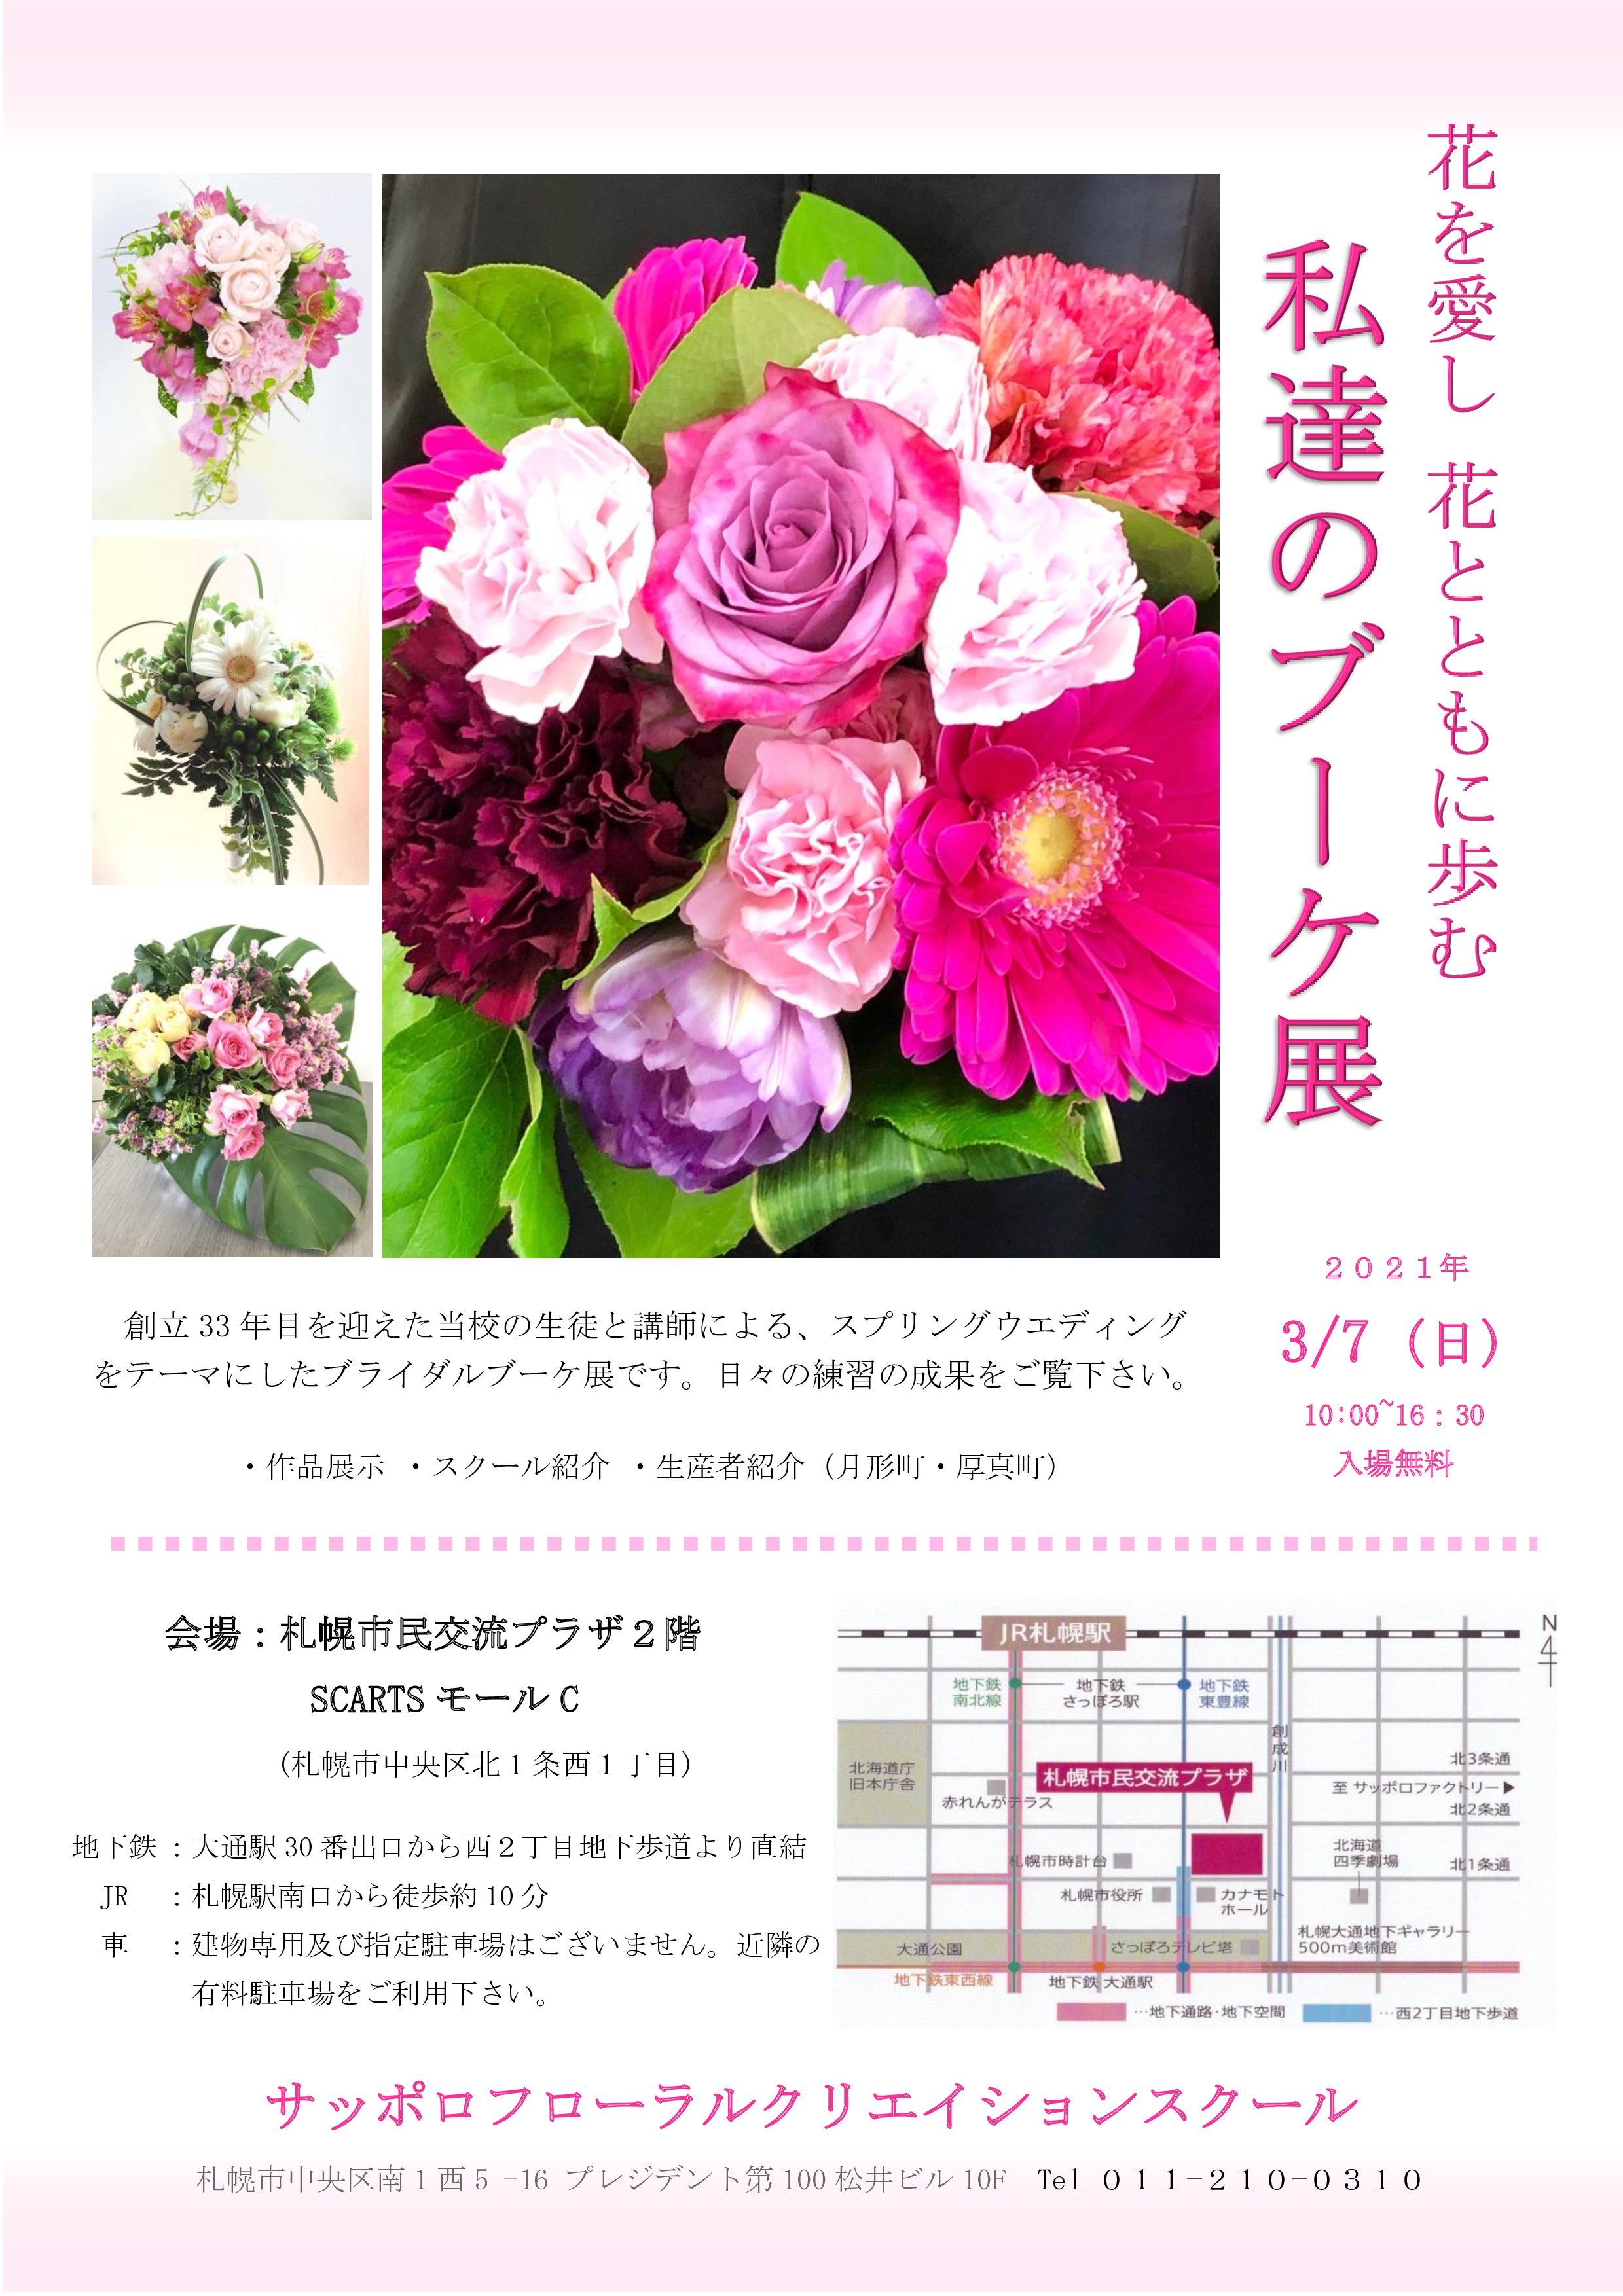 花を愛し花とともに歩む私達のブーケ展 札幌文化芸術交流センター Scarts 札幌市民交流プラザ